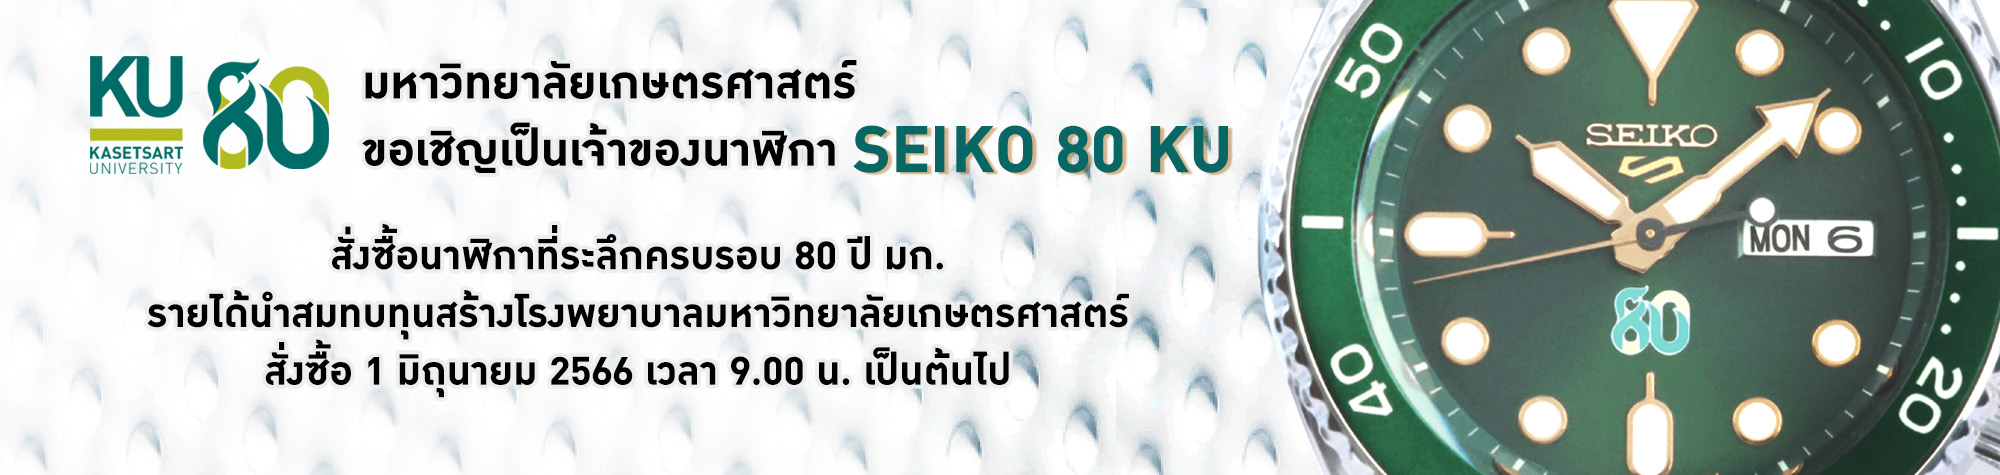 นาฬิกา SEIKO รุ่น KU ครบรอบ 80 ปี